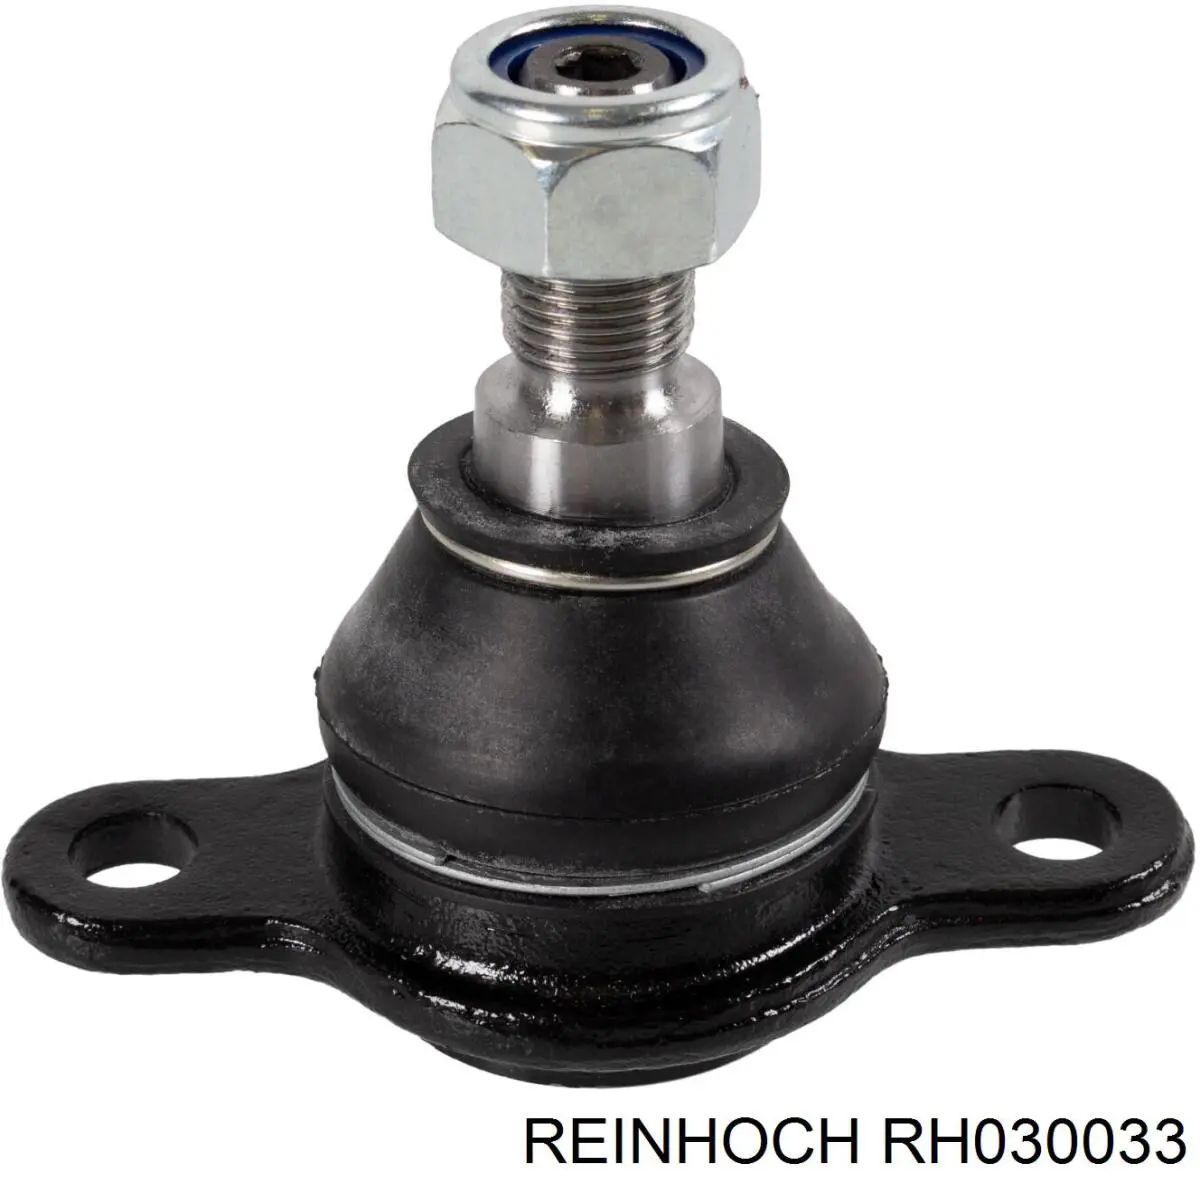 RH030033 Reinhoch шаровая опора нижняя